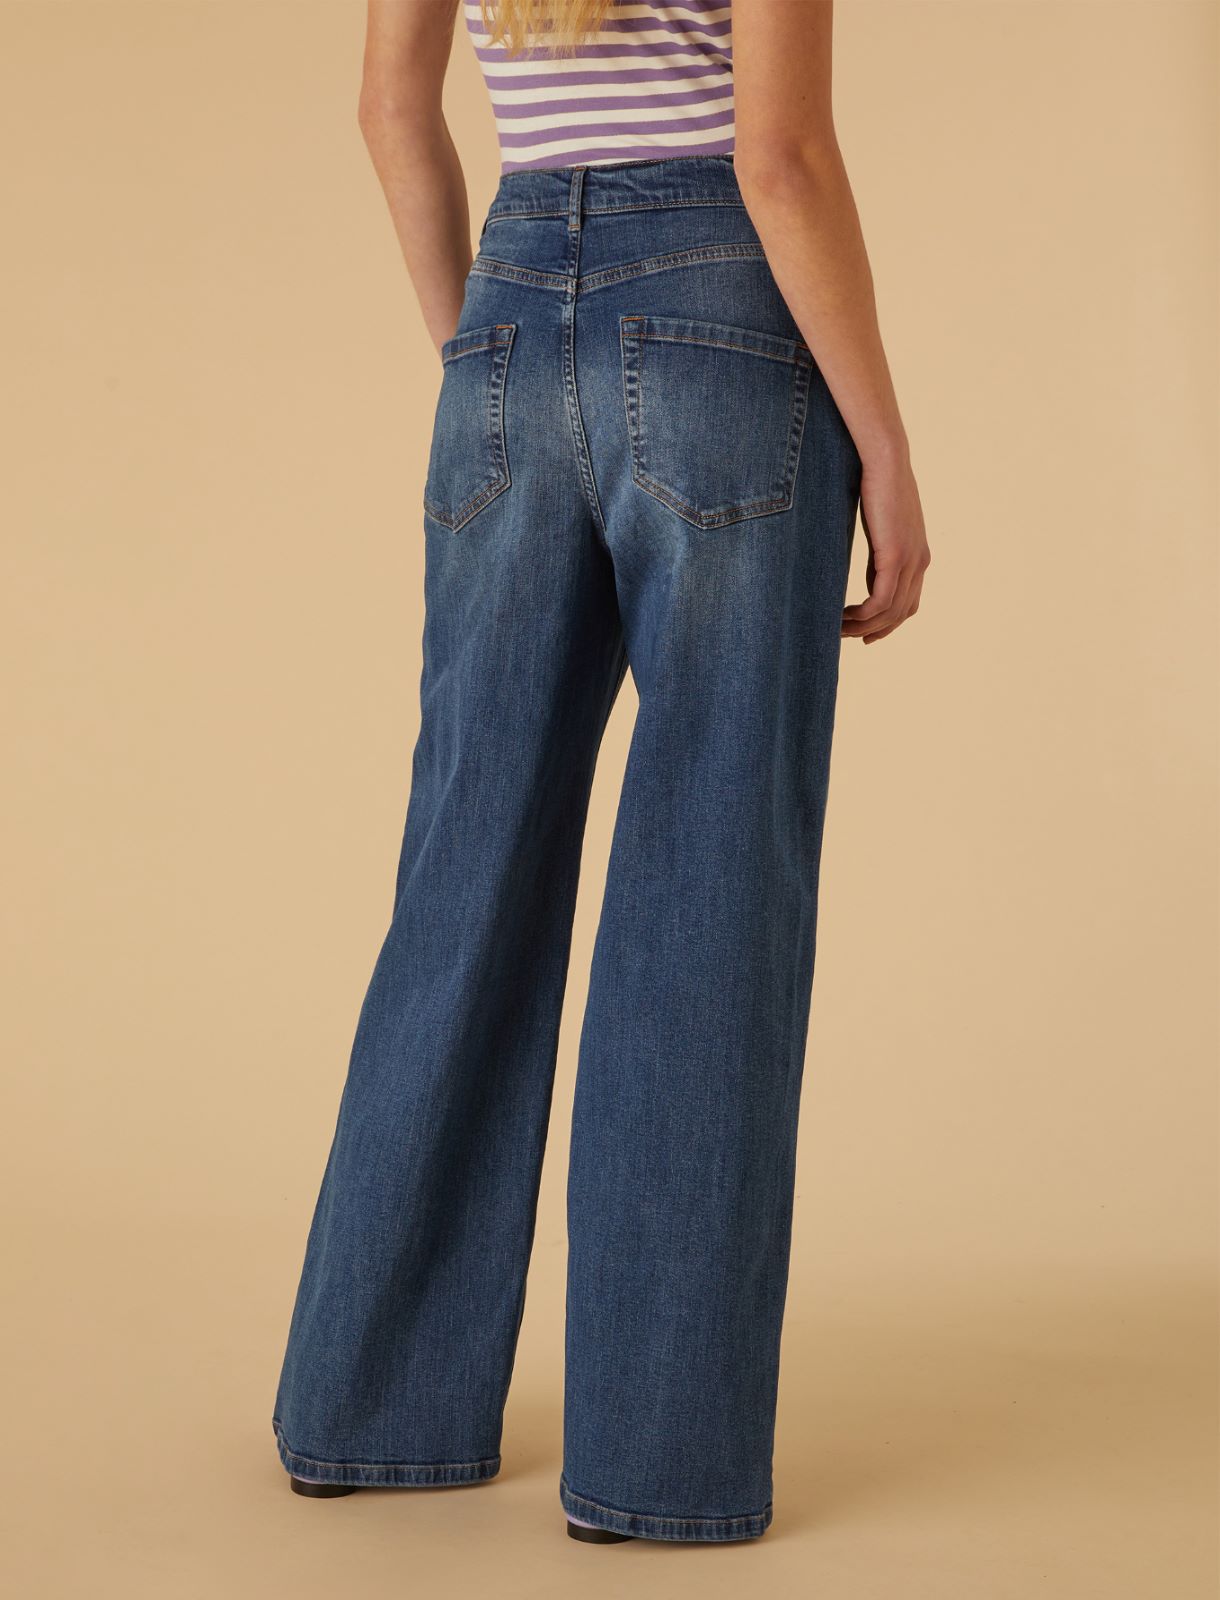 Jean jambe large - Bleu jeans - Marella - 2